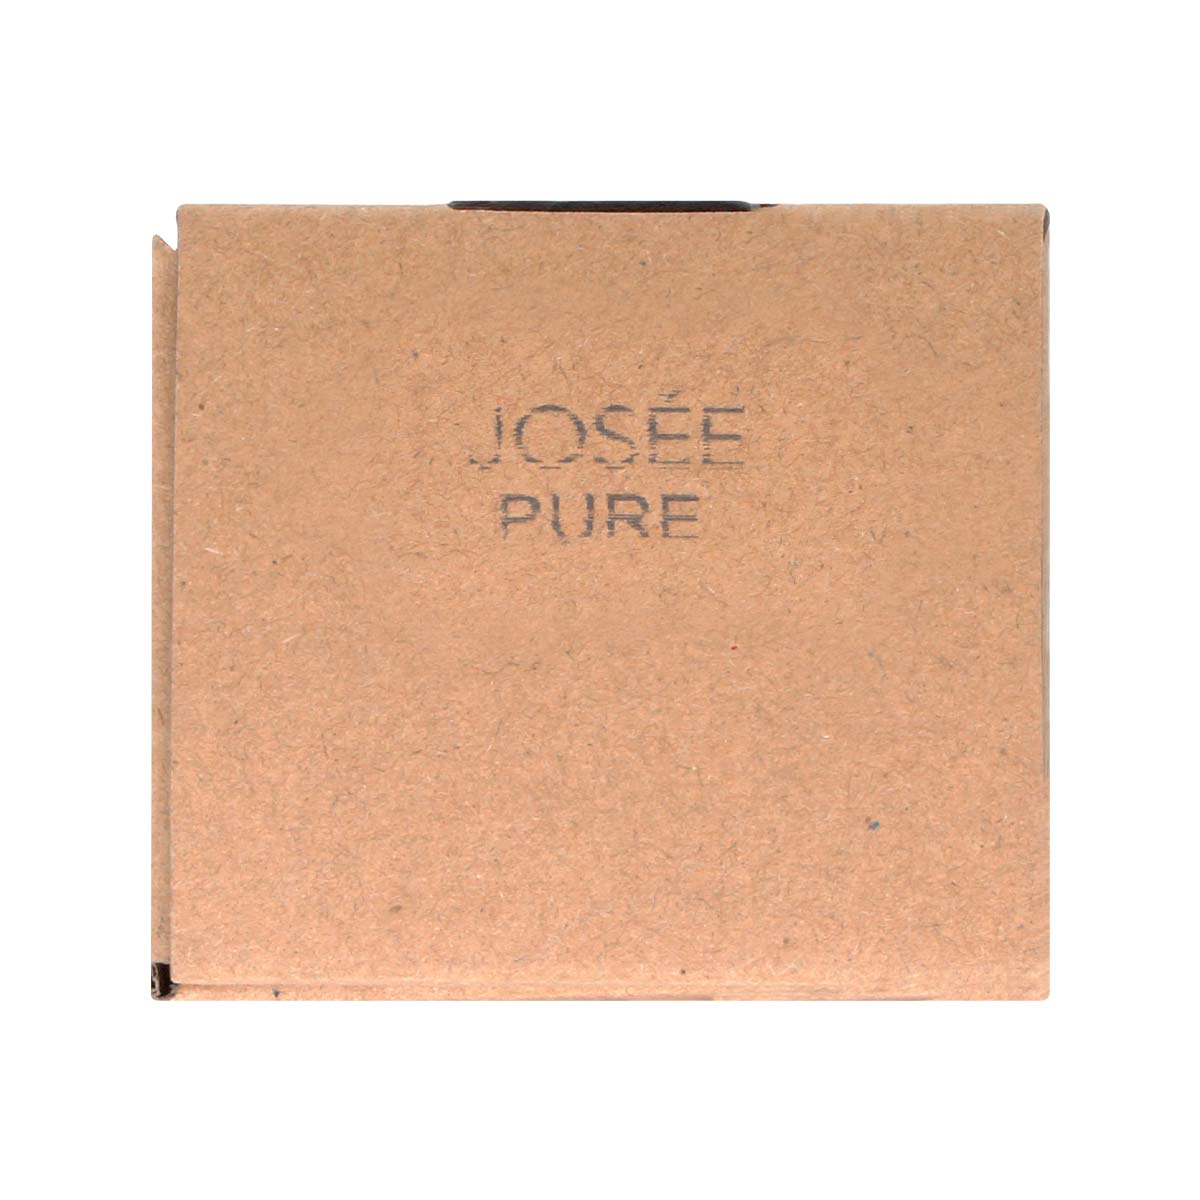 JOSEE (ジョセー) ビュア リードディフューザー 100ml-p_3